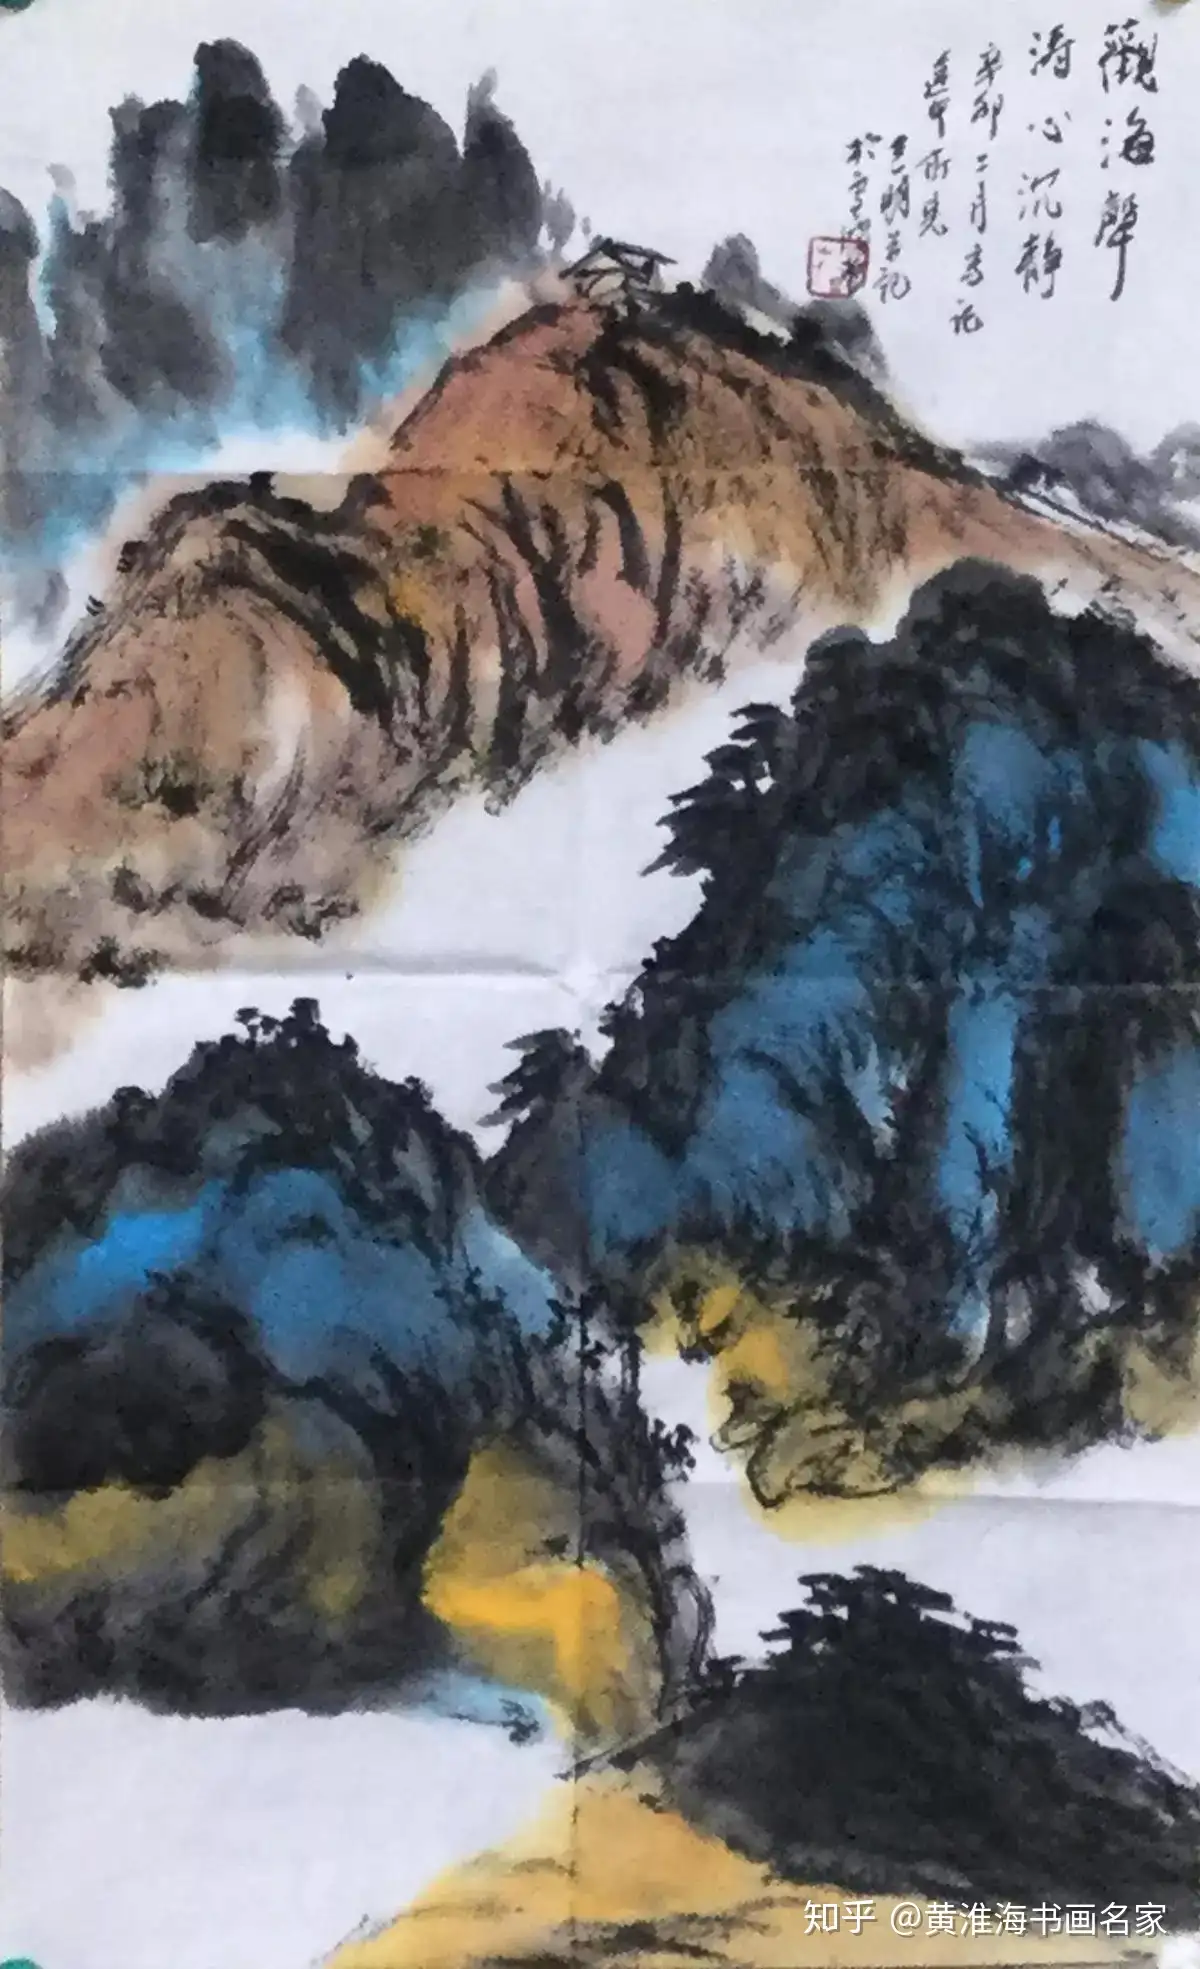 墨彩华章”——芜湖市著名画家黄曙光雪鸿堂书画作品展将在合肥亚明艺术馆